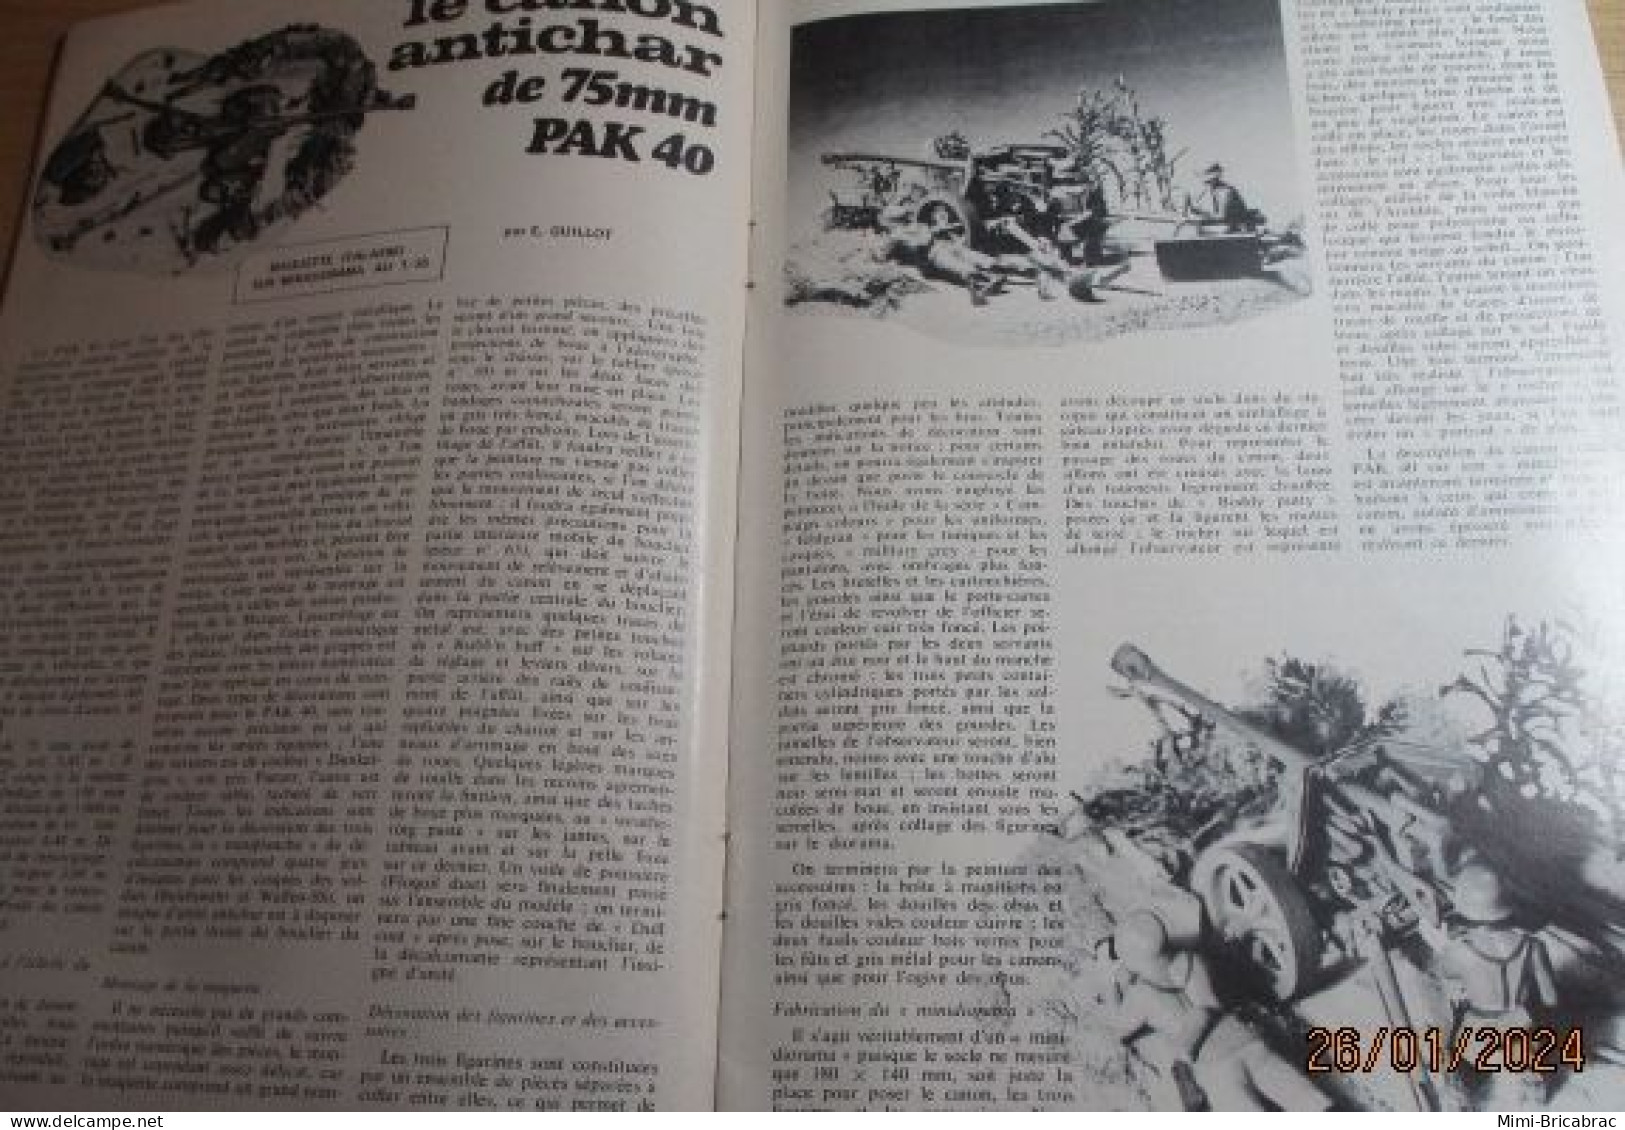 CAGI 1e Revue de maquettisme plastique années 60/70 : MPM n°44 de 1974 très bon état ! Sommaire en photo 2 ou 3